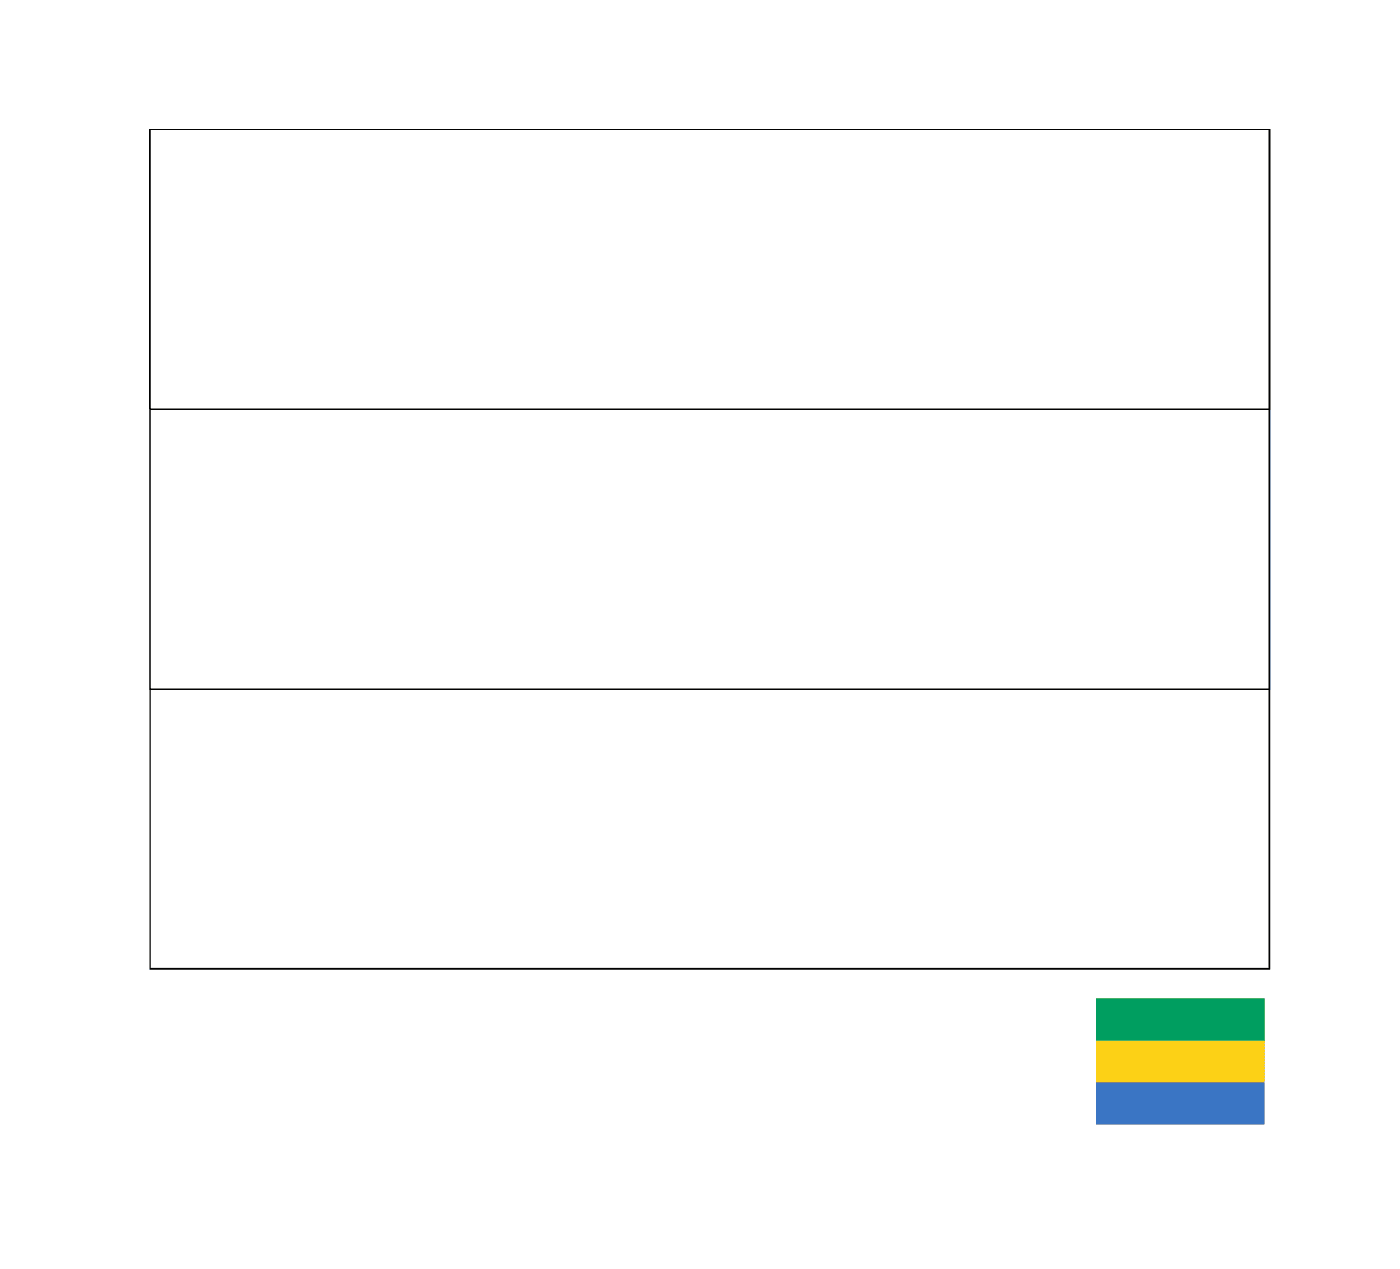  A flag of Gabon 